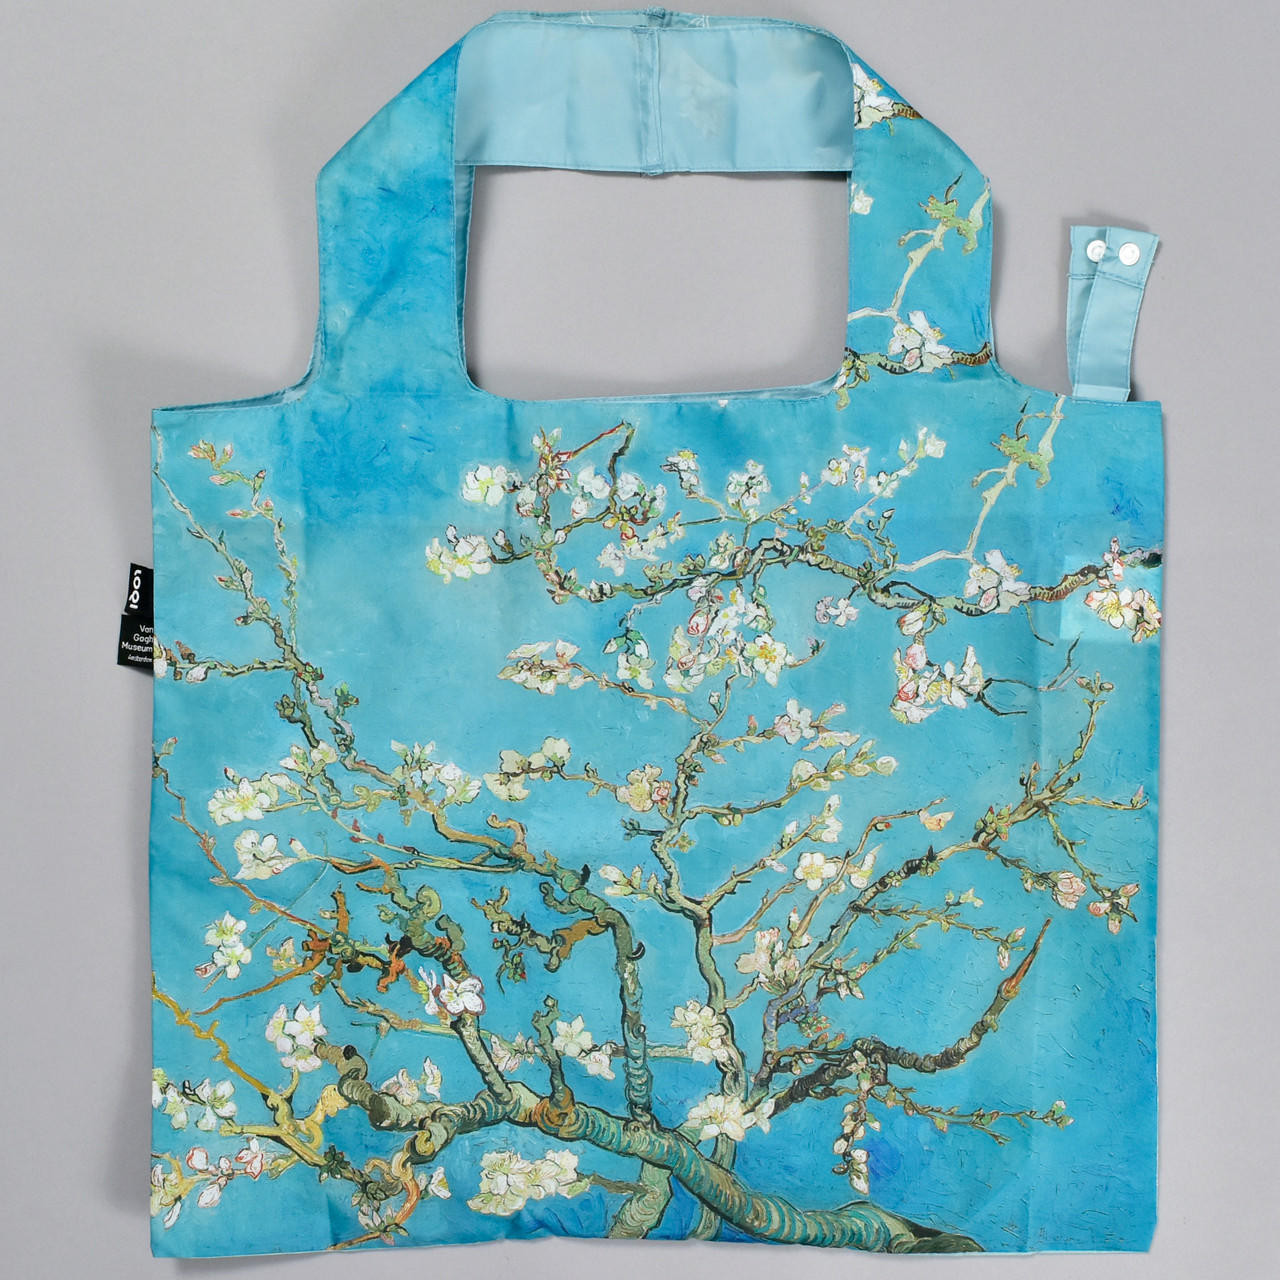 Almond Blossom Tote Bag, Van Gogh Tote Bag, Aesthetic Tote Bag, Tote Bag  Pattern